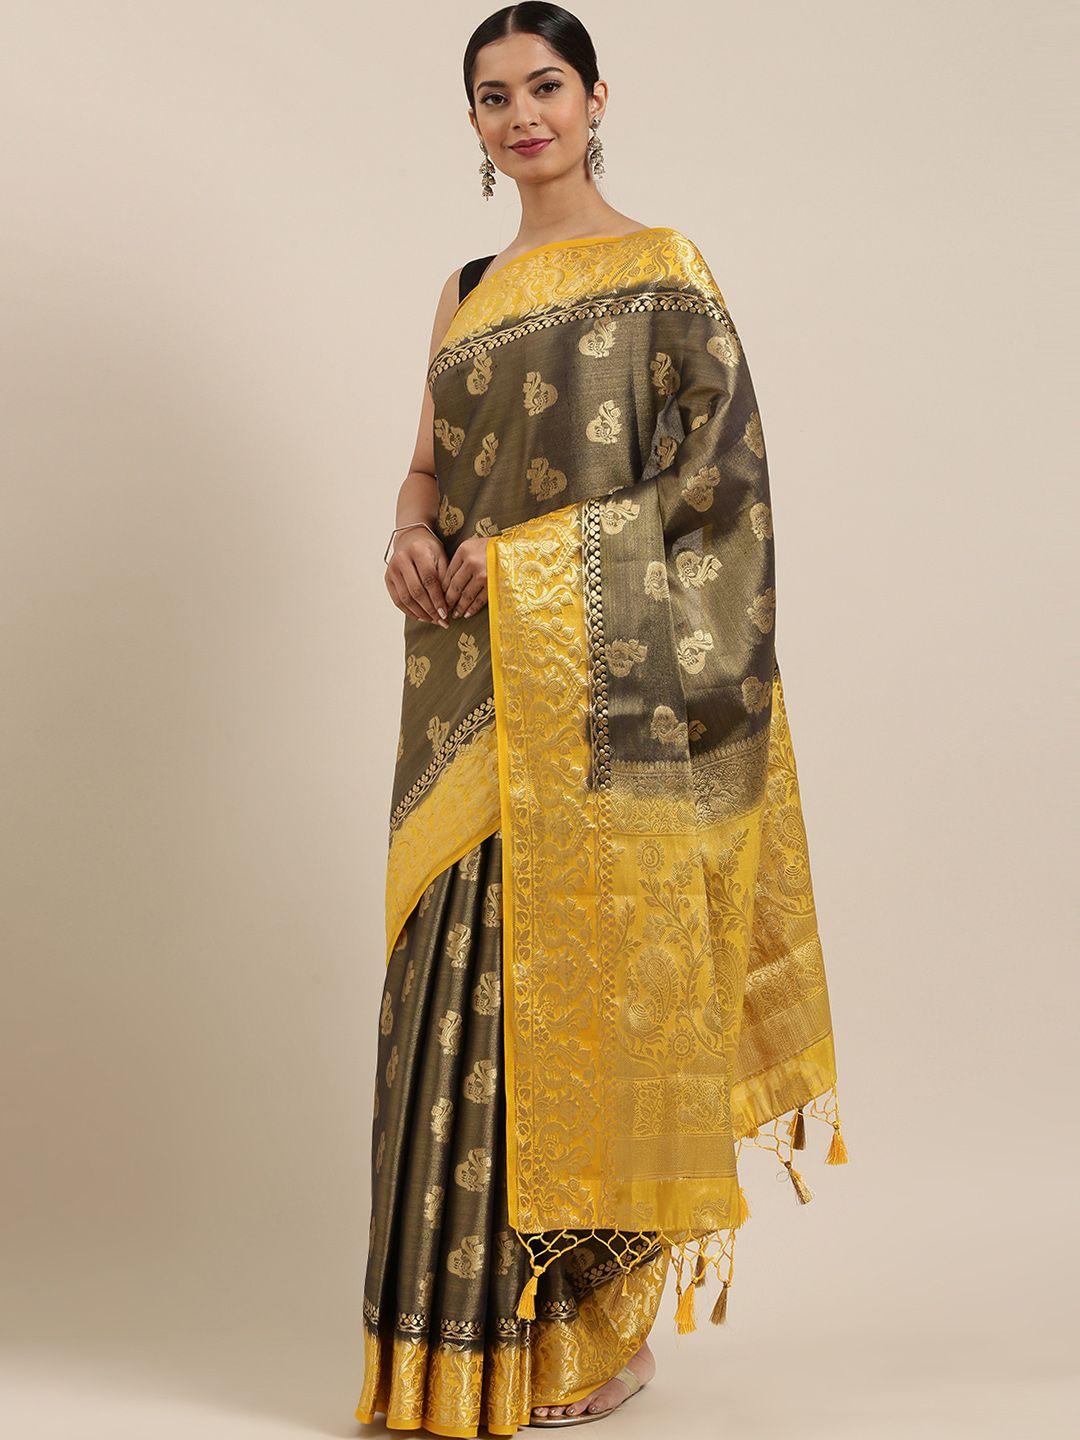 mimosa charcoal grey & yellow art silk woven design kanjeevaram saree